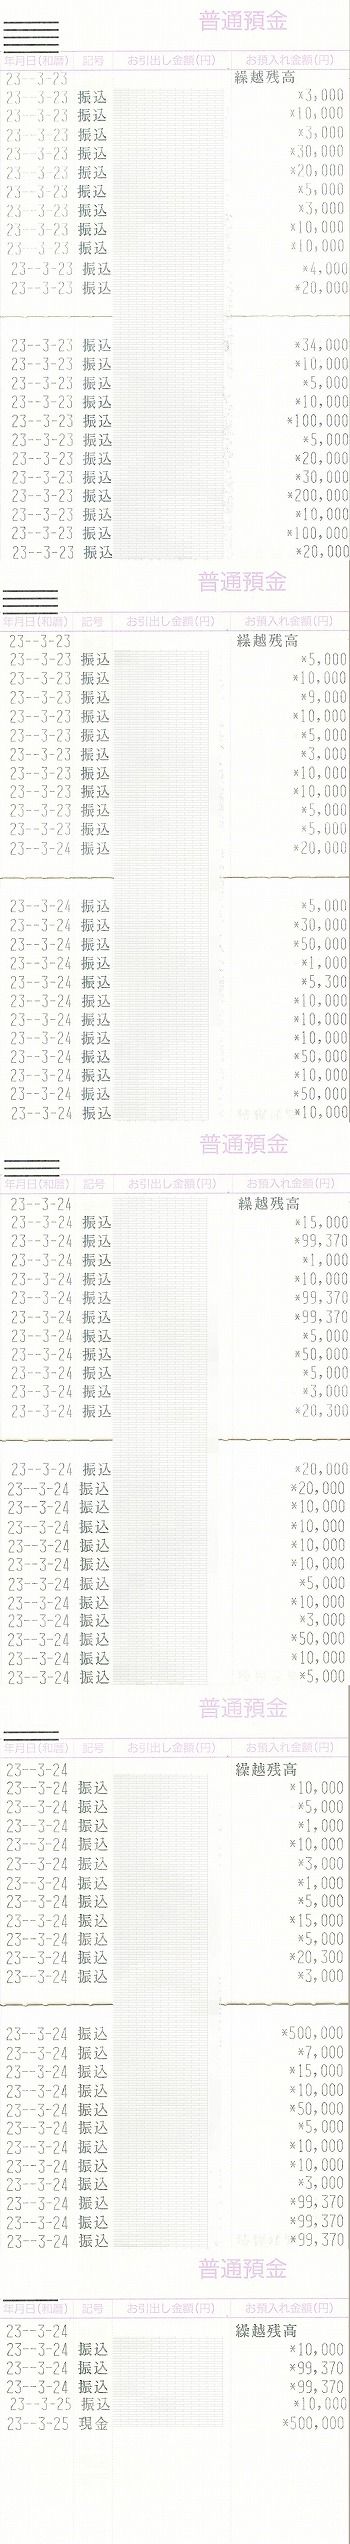 美鈴公式サイト募金係0311震災募金6-10